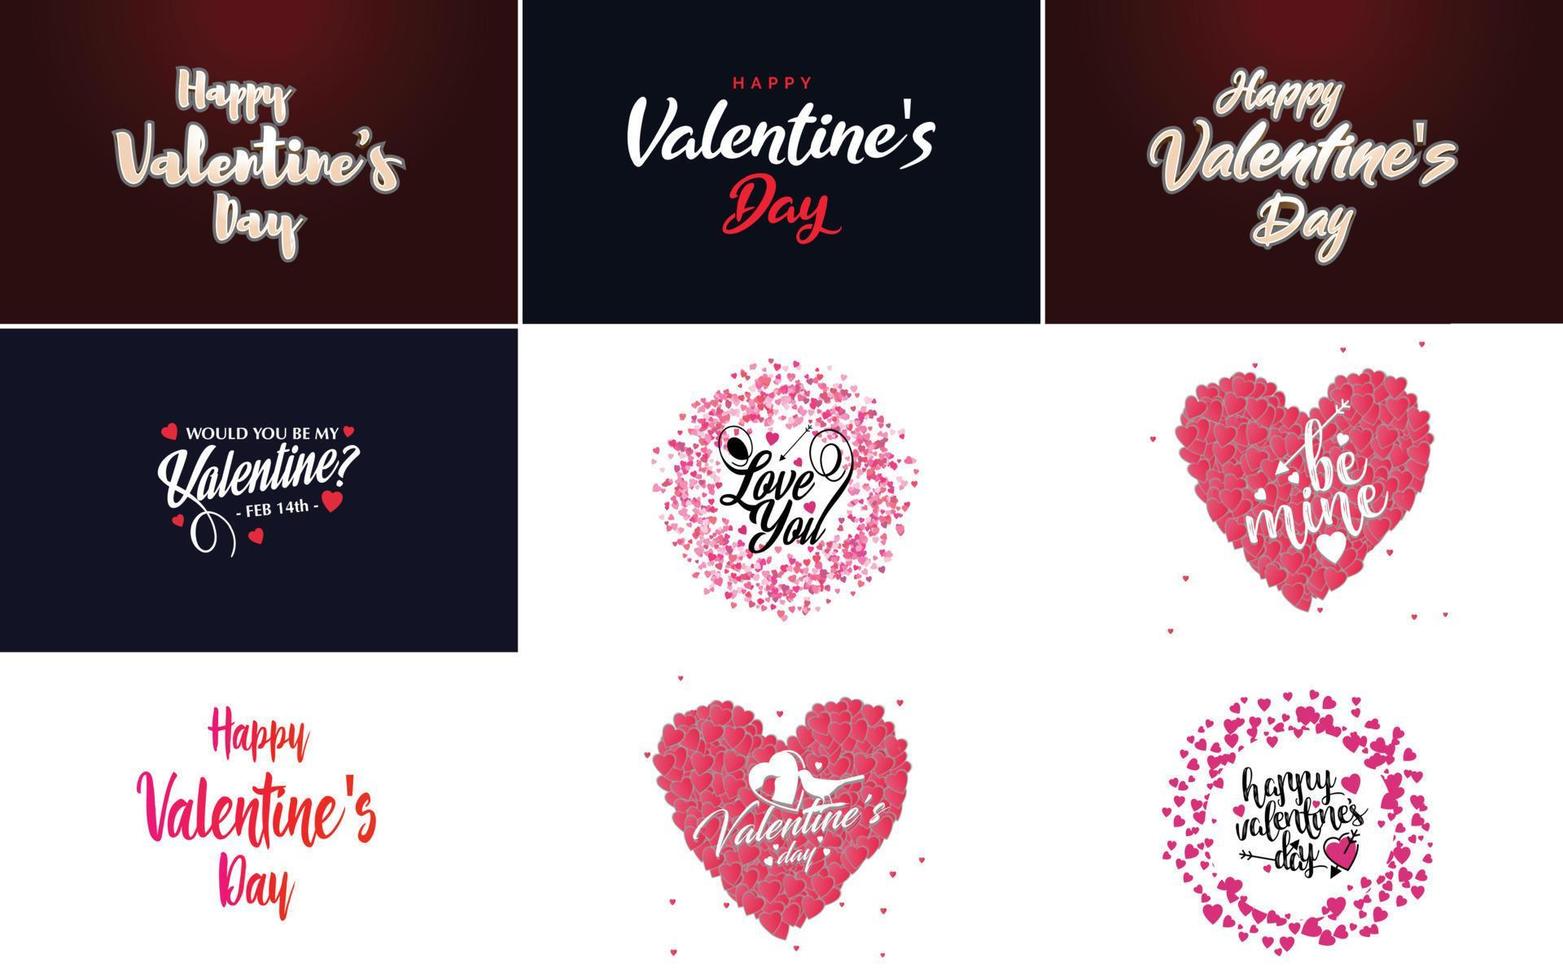 Happy Valentine's Day Grußkartenvorlage mit einem floralen Thema und einem rosa Farbschema vektor